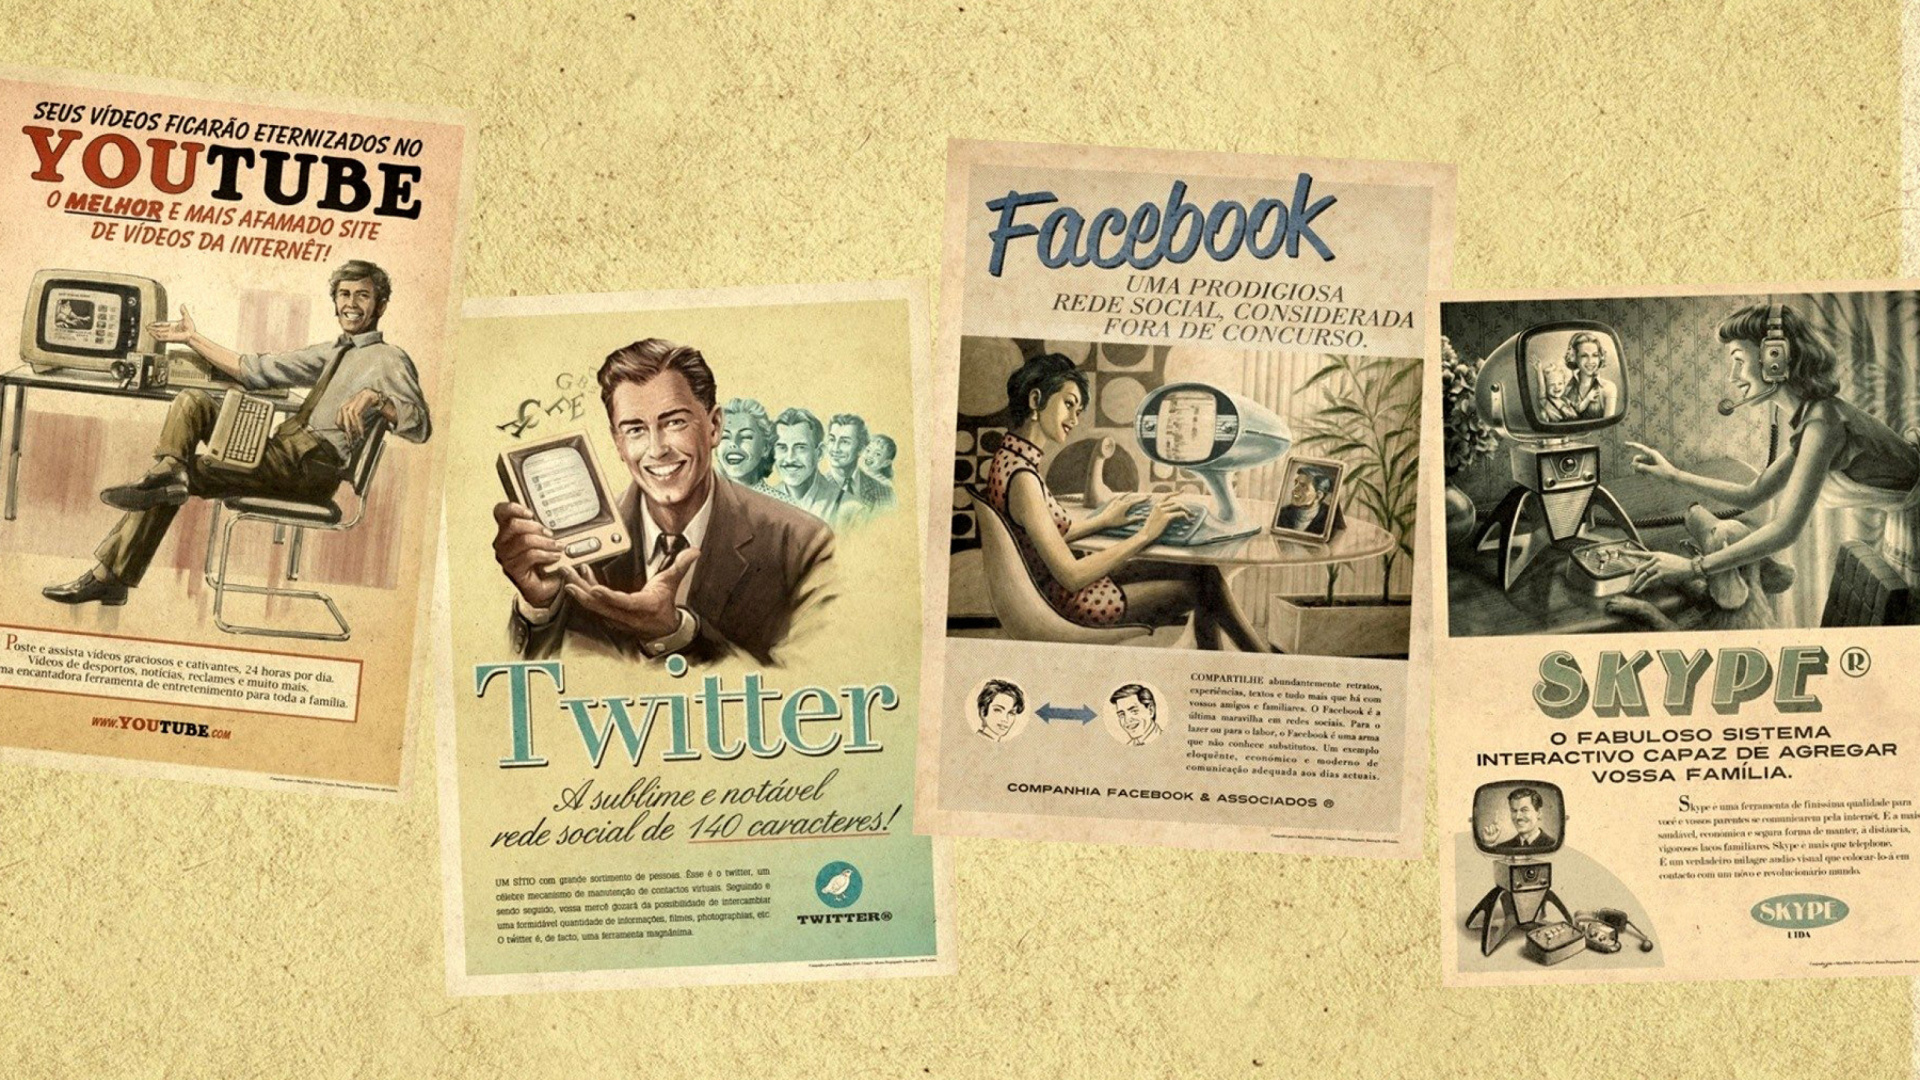 Social Networks Advertising: Skype, Twitter, Youtube screenshot #1 1920x1080